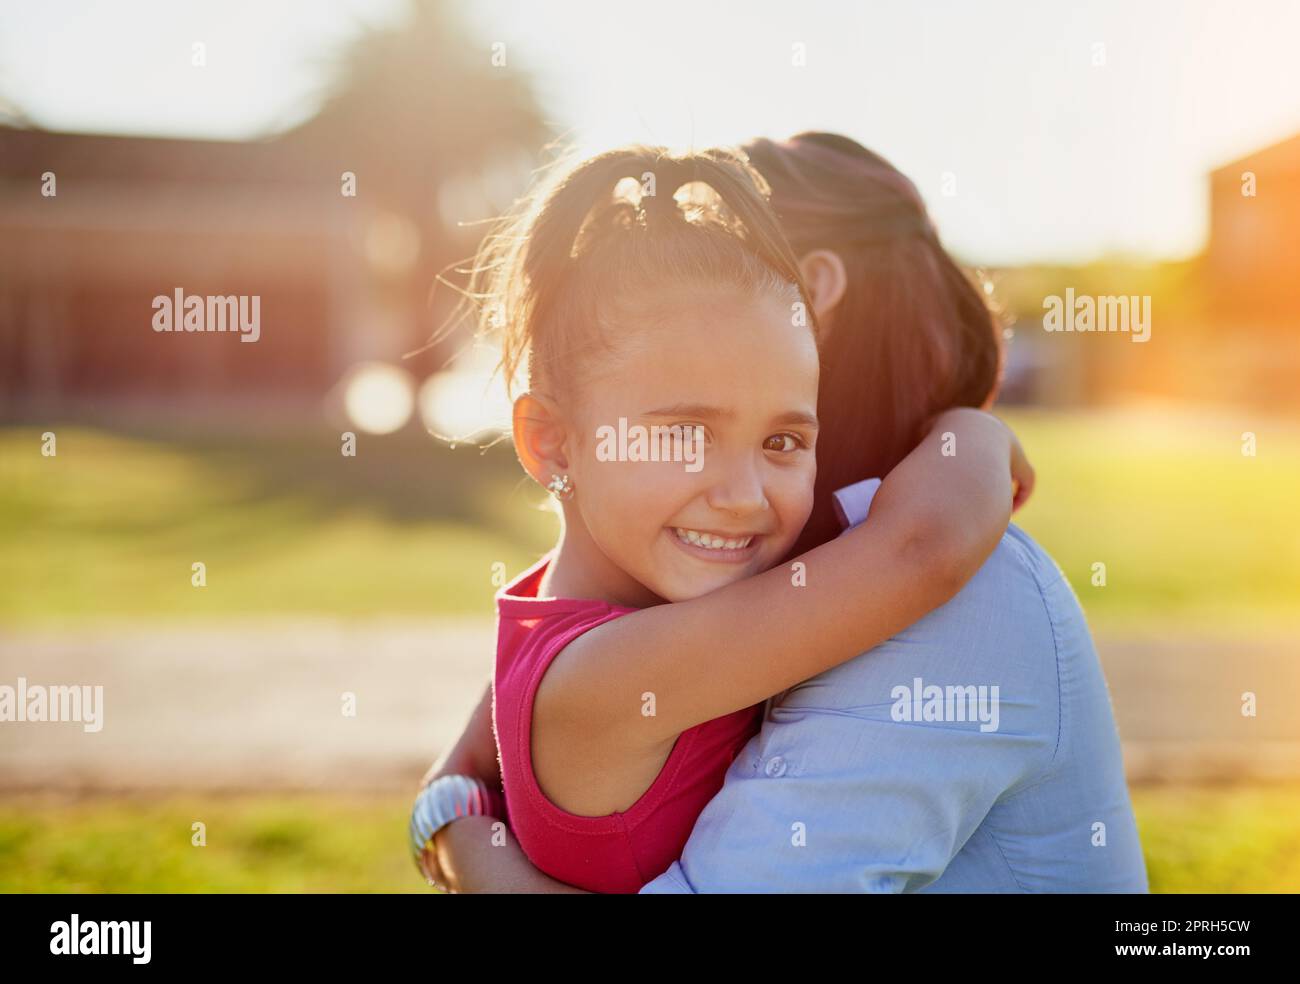 Mummys sind immer mit einer Umarmung da. Porträt eines lächelnden kleinen Mädchens, das ihre Mutter umarmt, während es einen Tag im Park gemeinsam genießt. Stockfoto